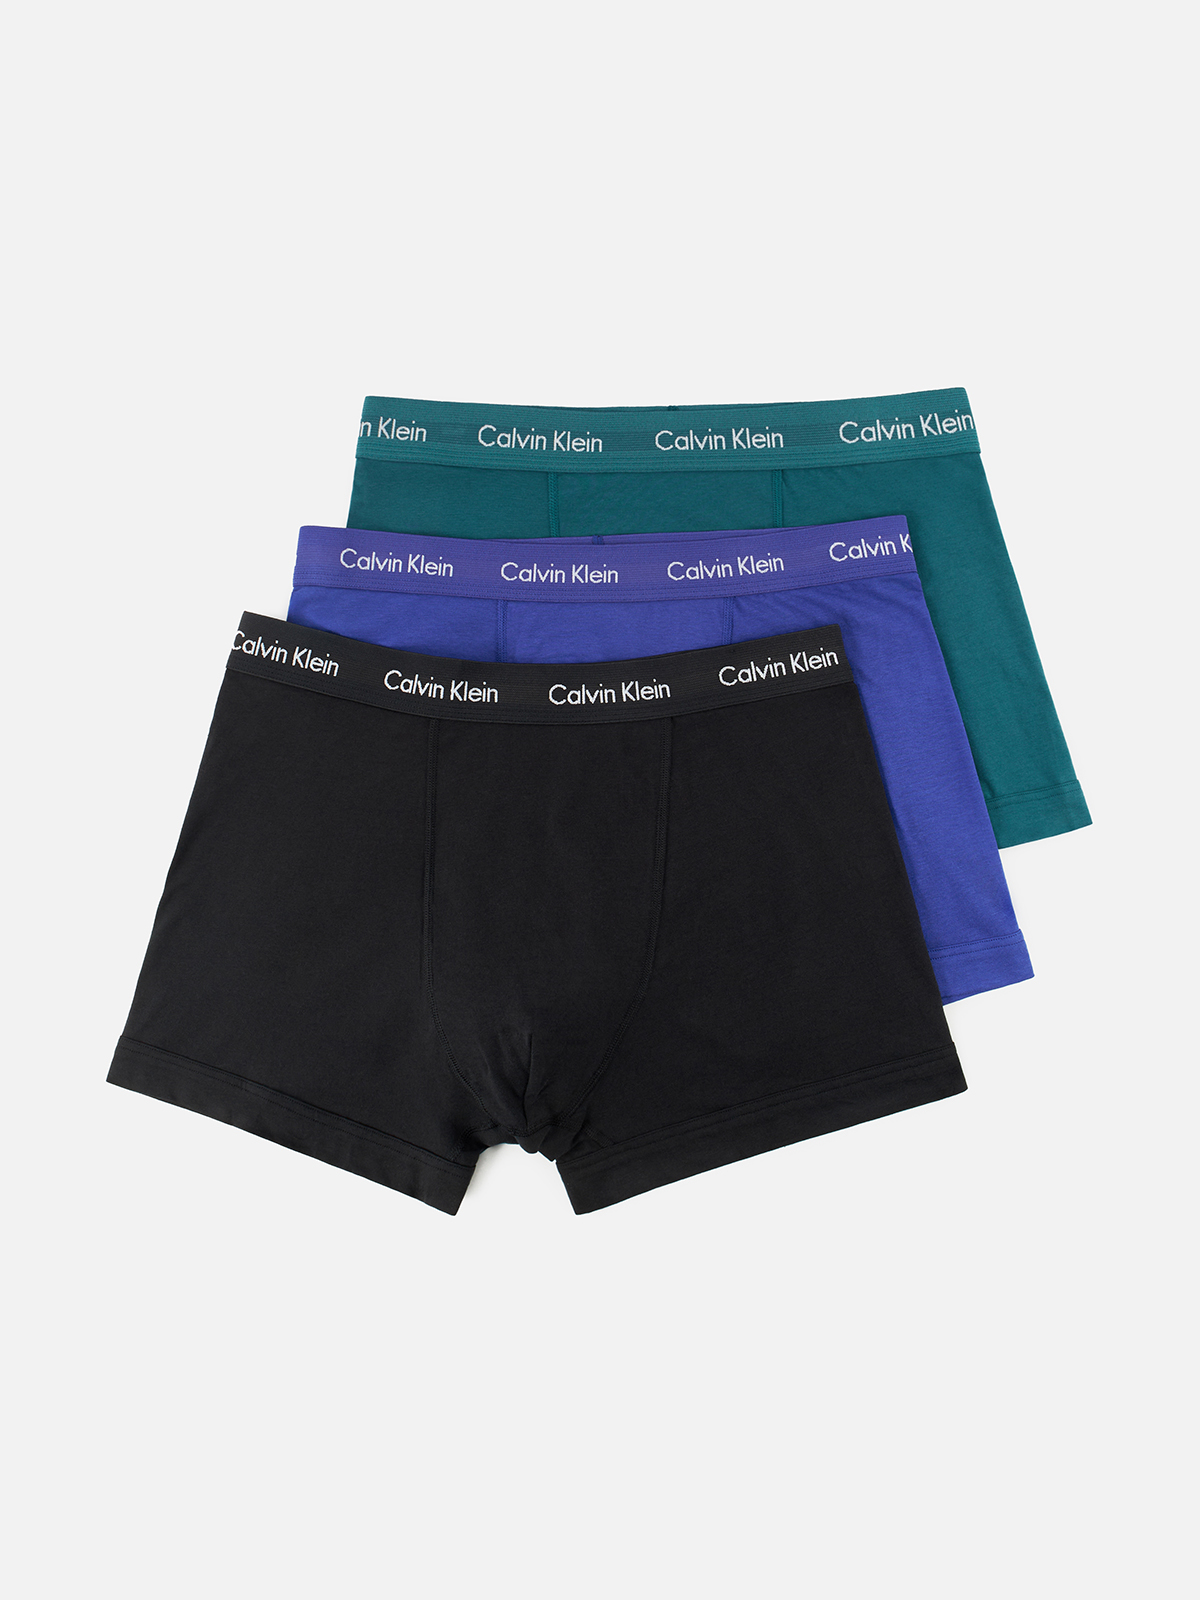 Комплект трусов мужских Calvin Klein Underwear 0000U2662G синих, зеленых, черных M